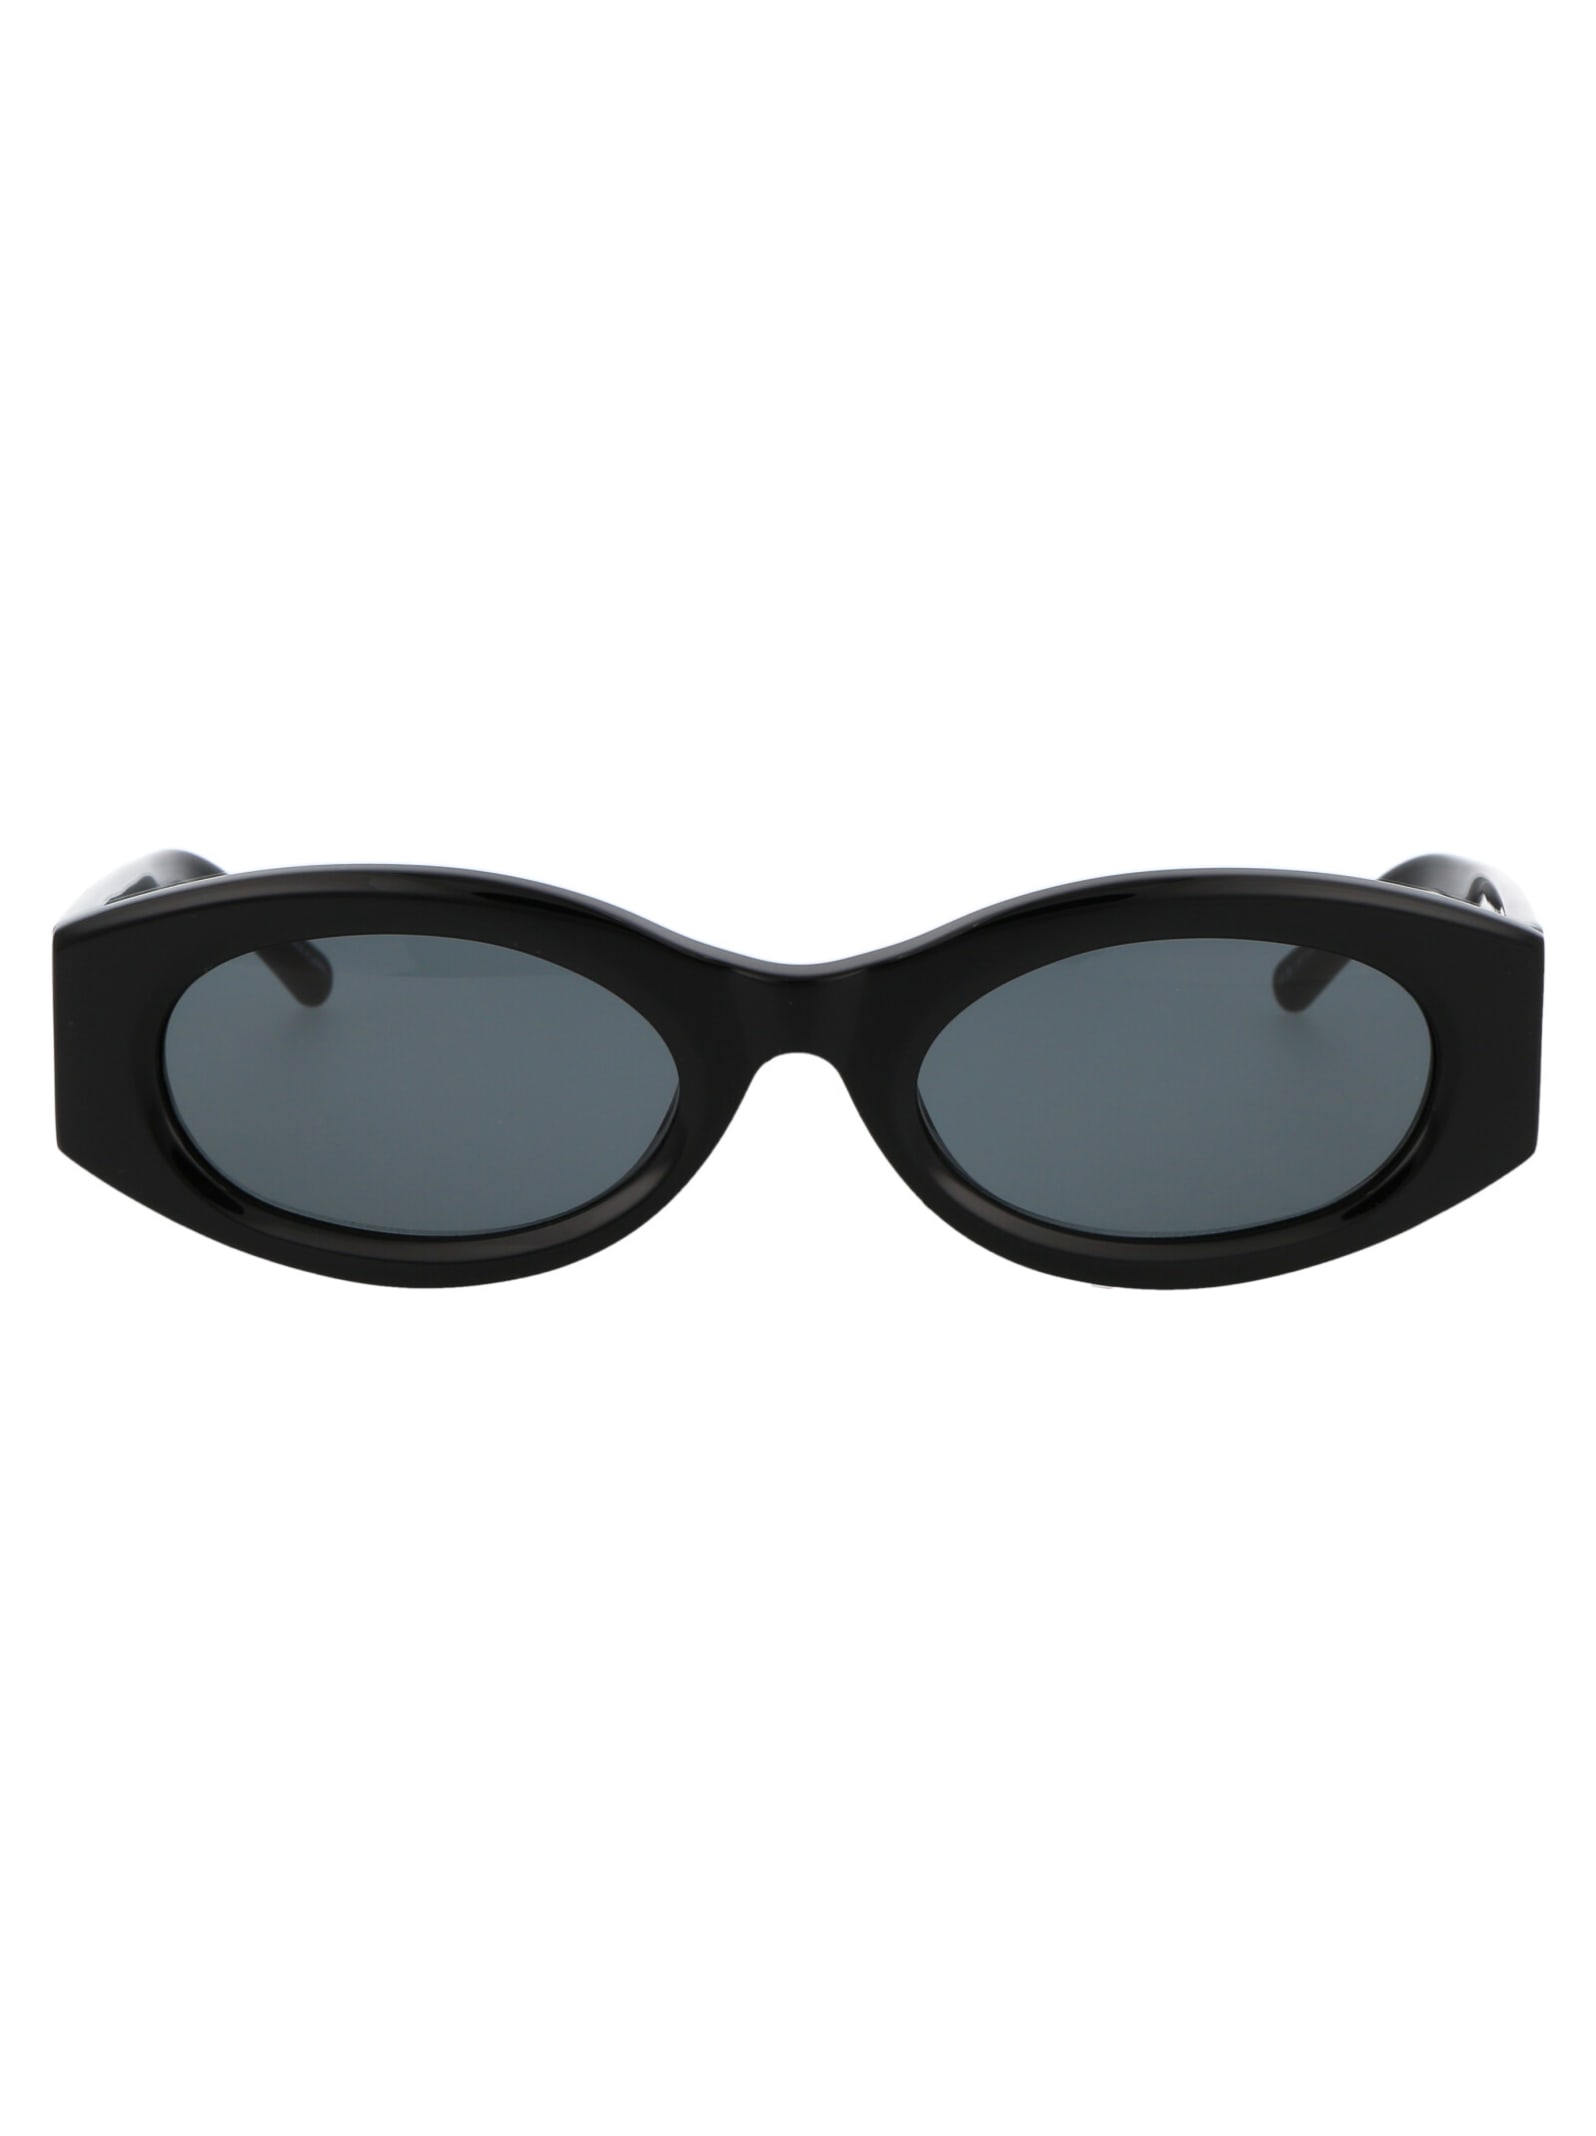 Shop Attico Berta Sunglasses In Black/silver/grey